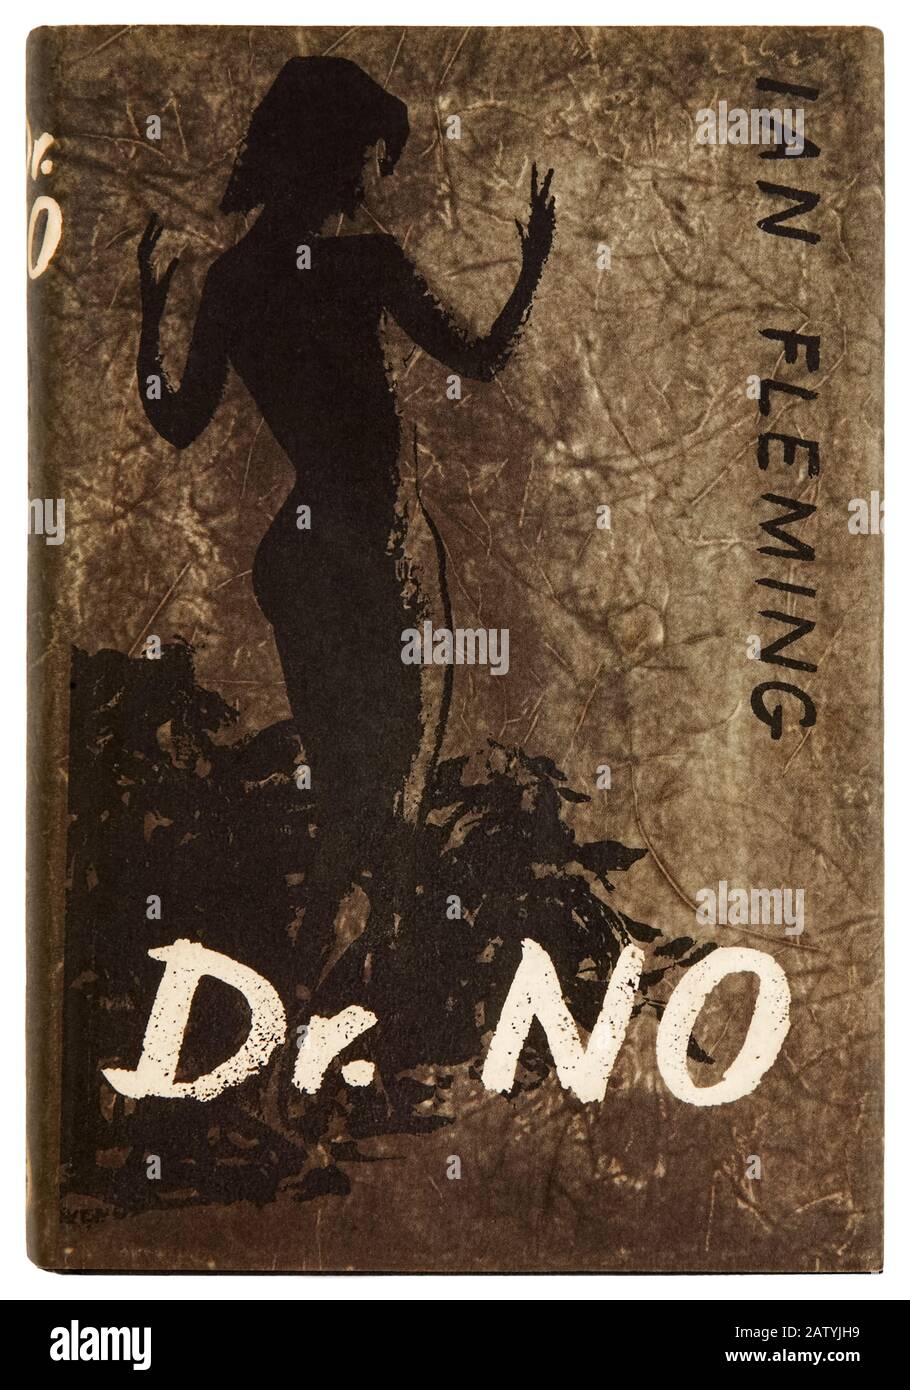 Dr No by Ian Fleming (1908 – 1964) le sixième roman à présenter l'agent du Service secret britannique 007, James Bond et le premier à être adapté pour le grand écran en 1962. Photo de la première édition de 1958 couverture présentant des œuvres d'art de Pat Marriott (1920-2002). Banque D'Images